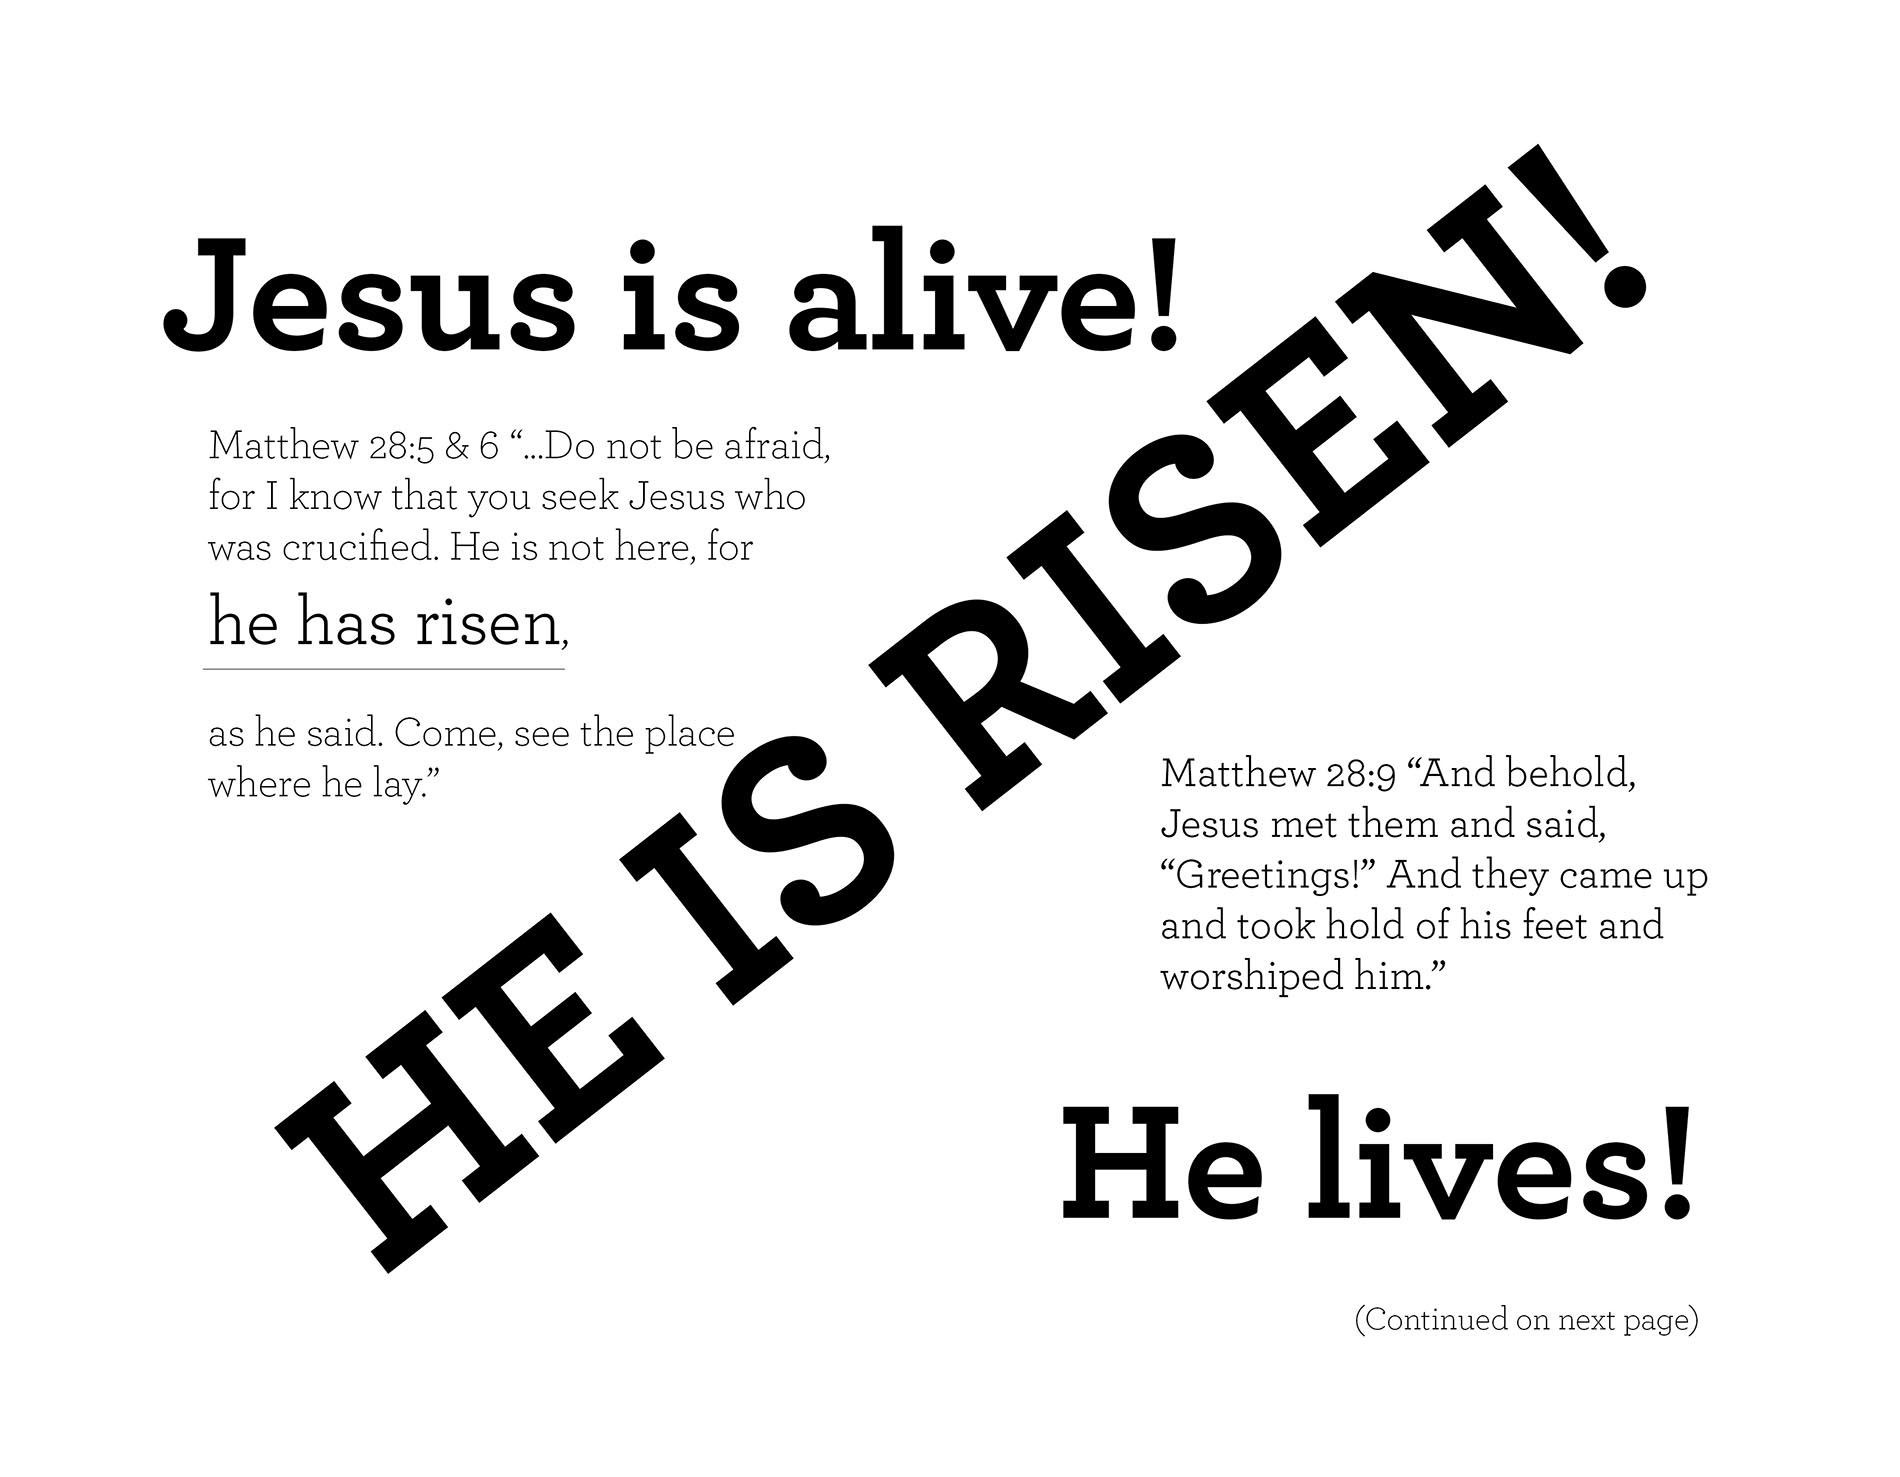 Jesus is alive! Matthew 28:5 & 6